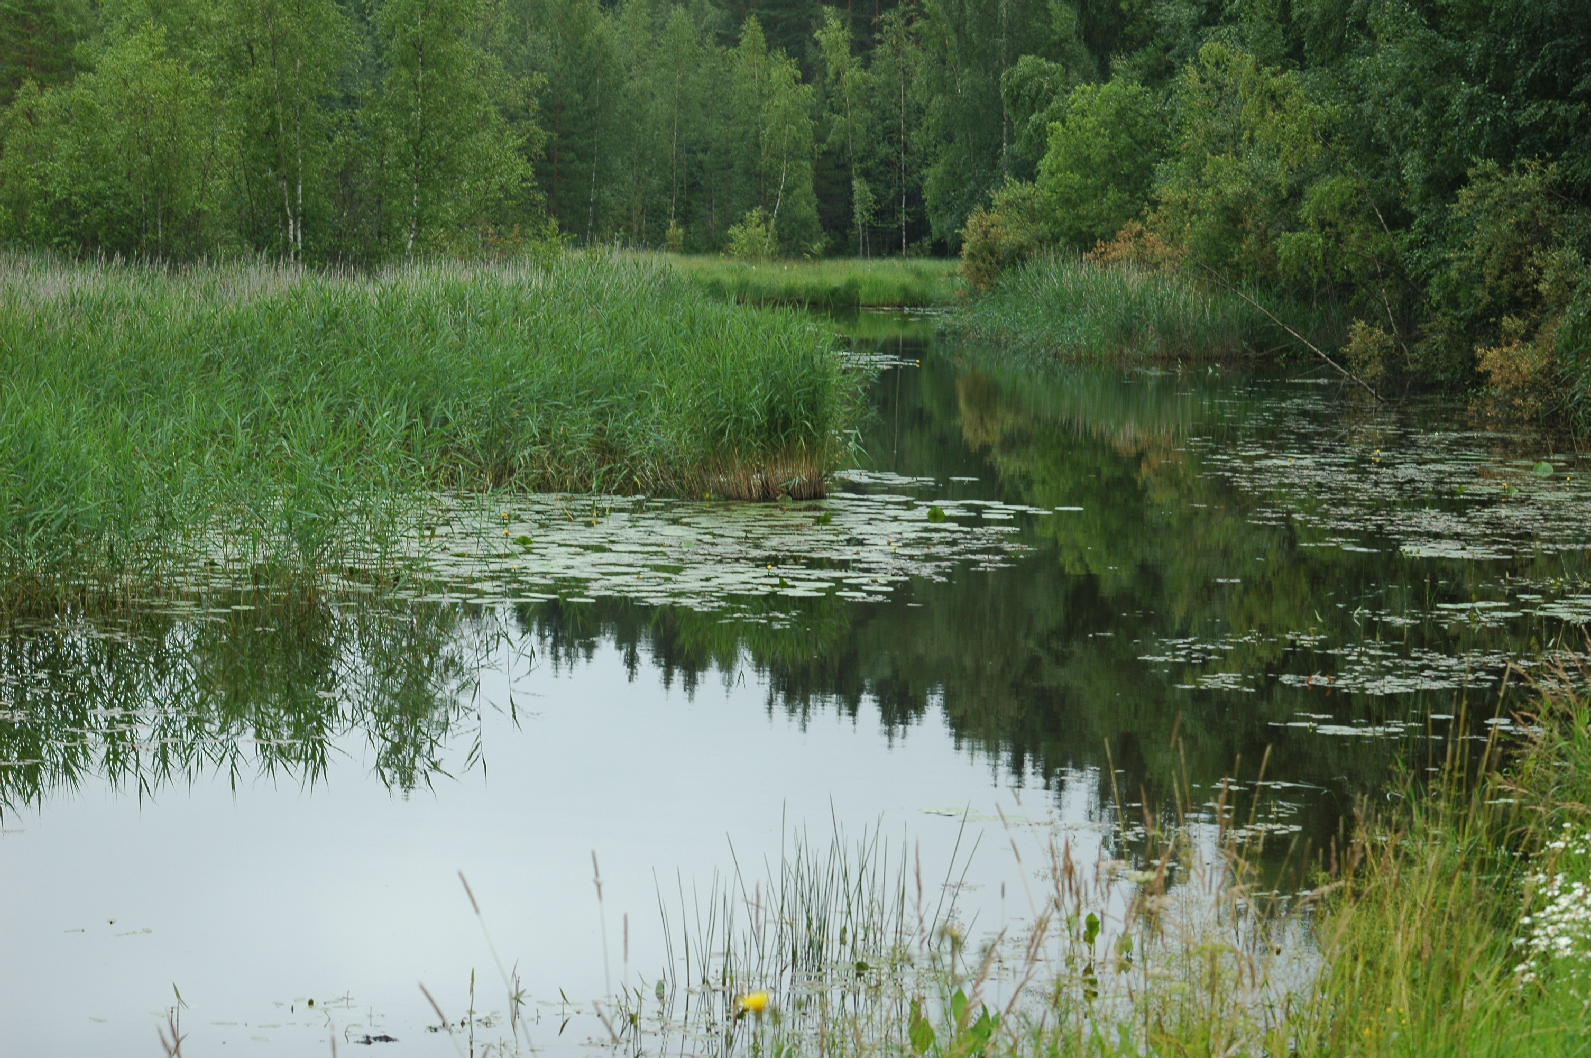 1. JOHDANTO Pirkkalan kunnan ympäristötoimi tilasi toukokuun lopulla 2012 Luontopeililtä Sikojoen luontoselvityksen, joka sisälsi alueen pesimälinnuston sekä tiukasti suojeltavien sudenkorentojen ja